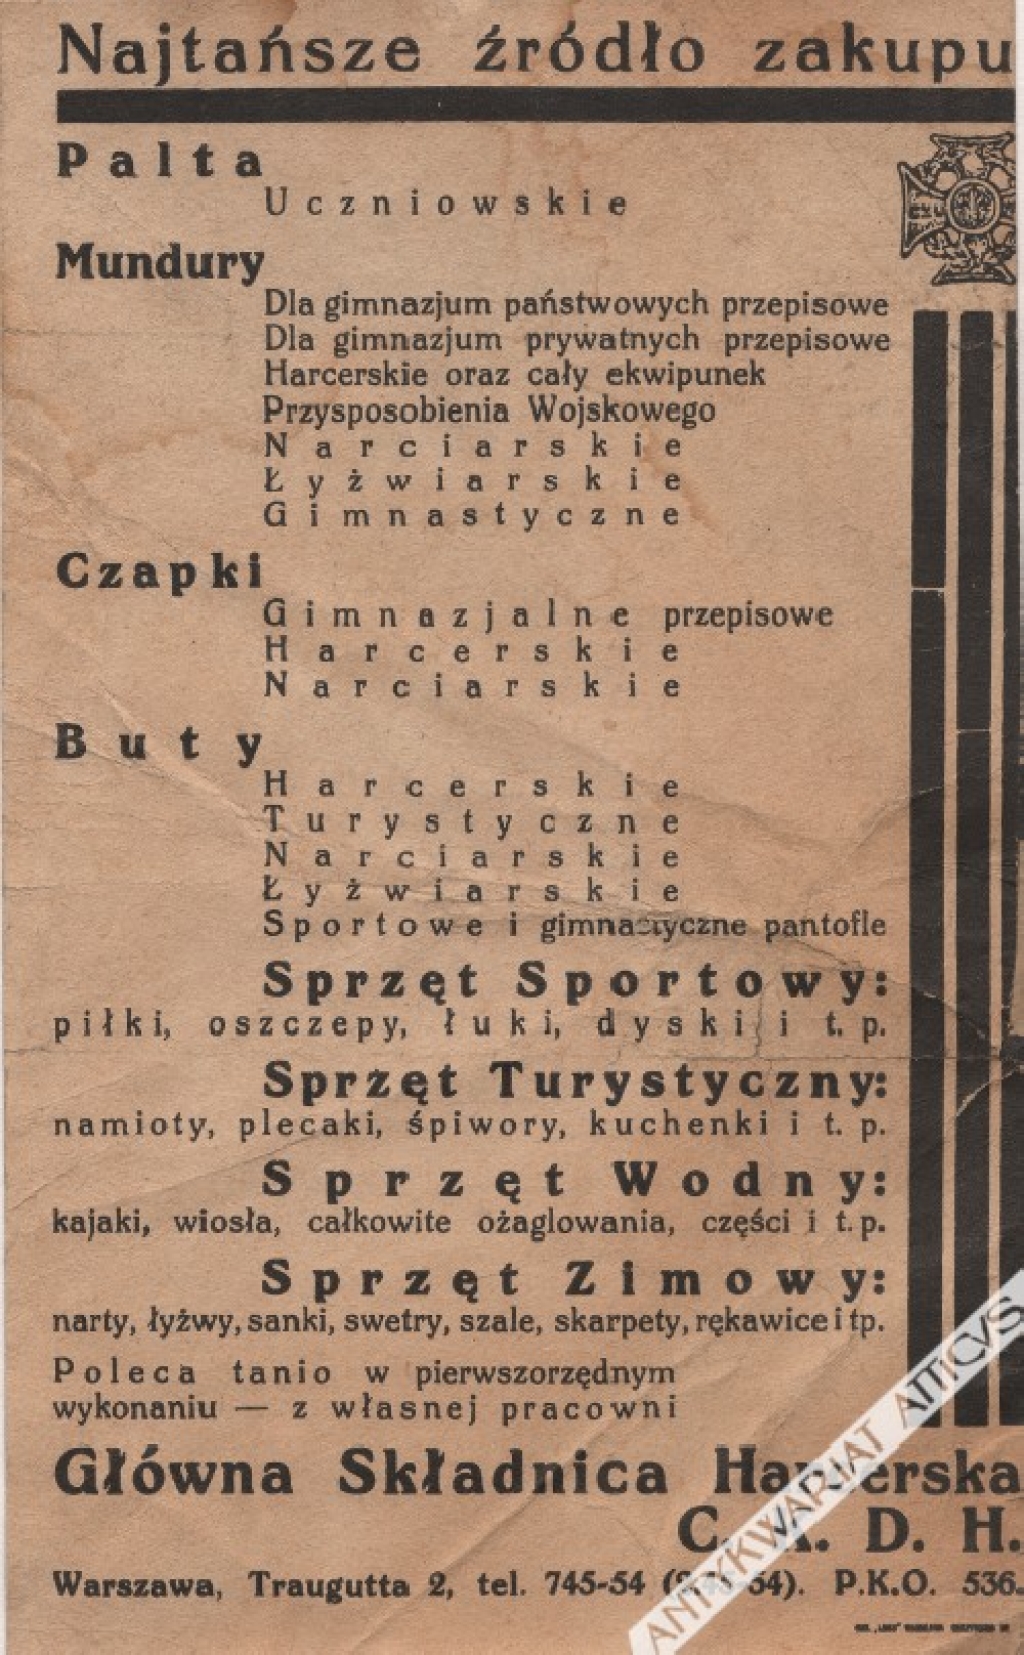 [reklama, ok. 1930 r.] Główna Składnica Harcerska..., Warszawa